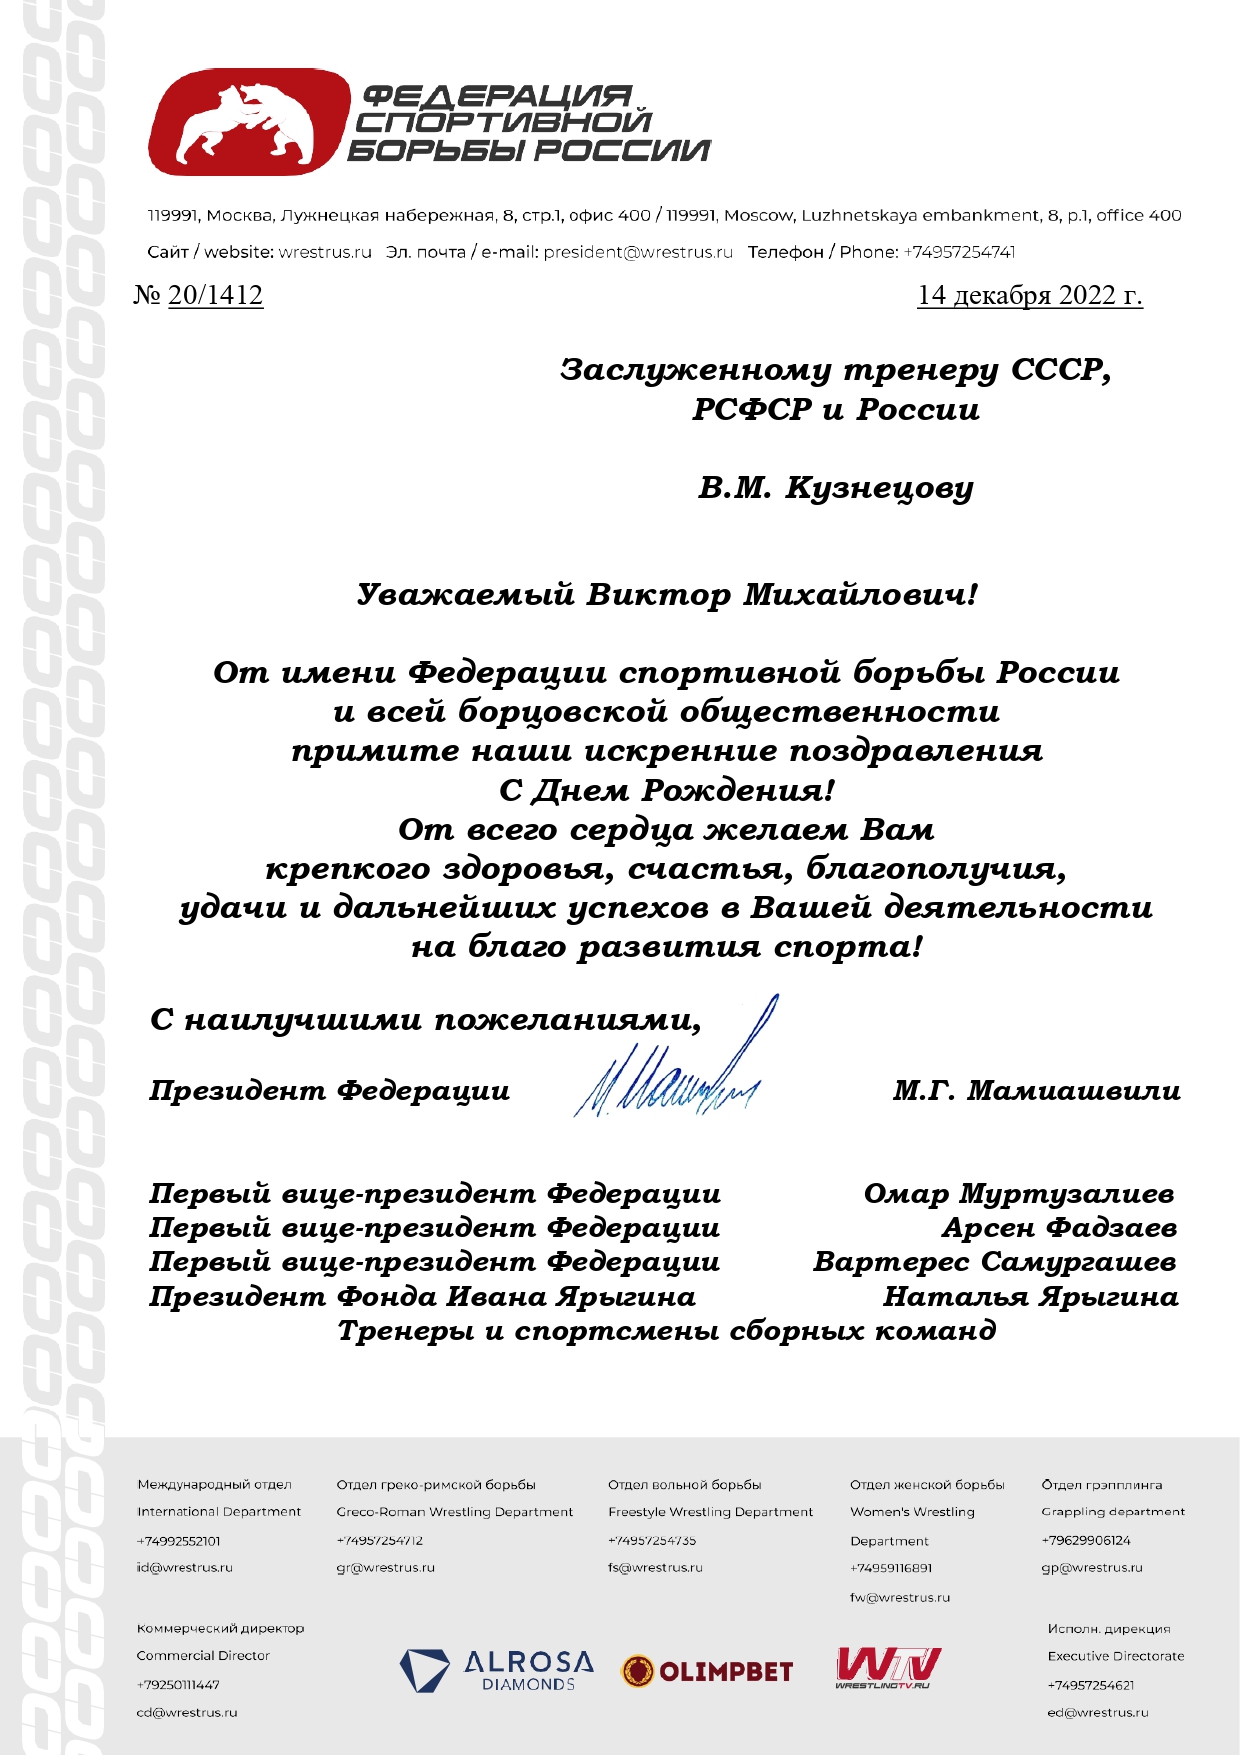 Кузнецову В.М. page 0001